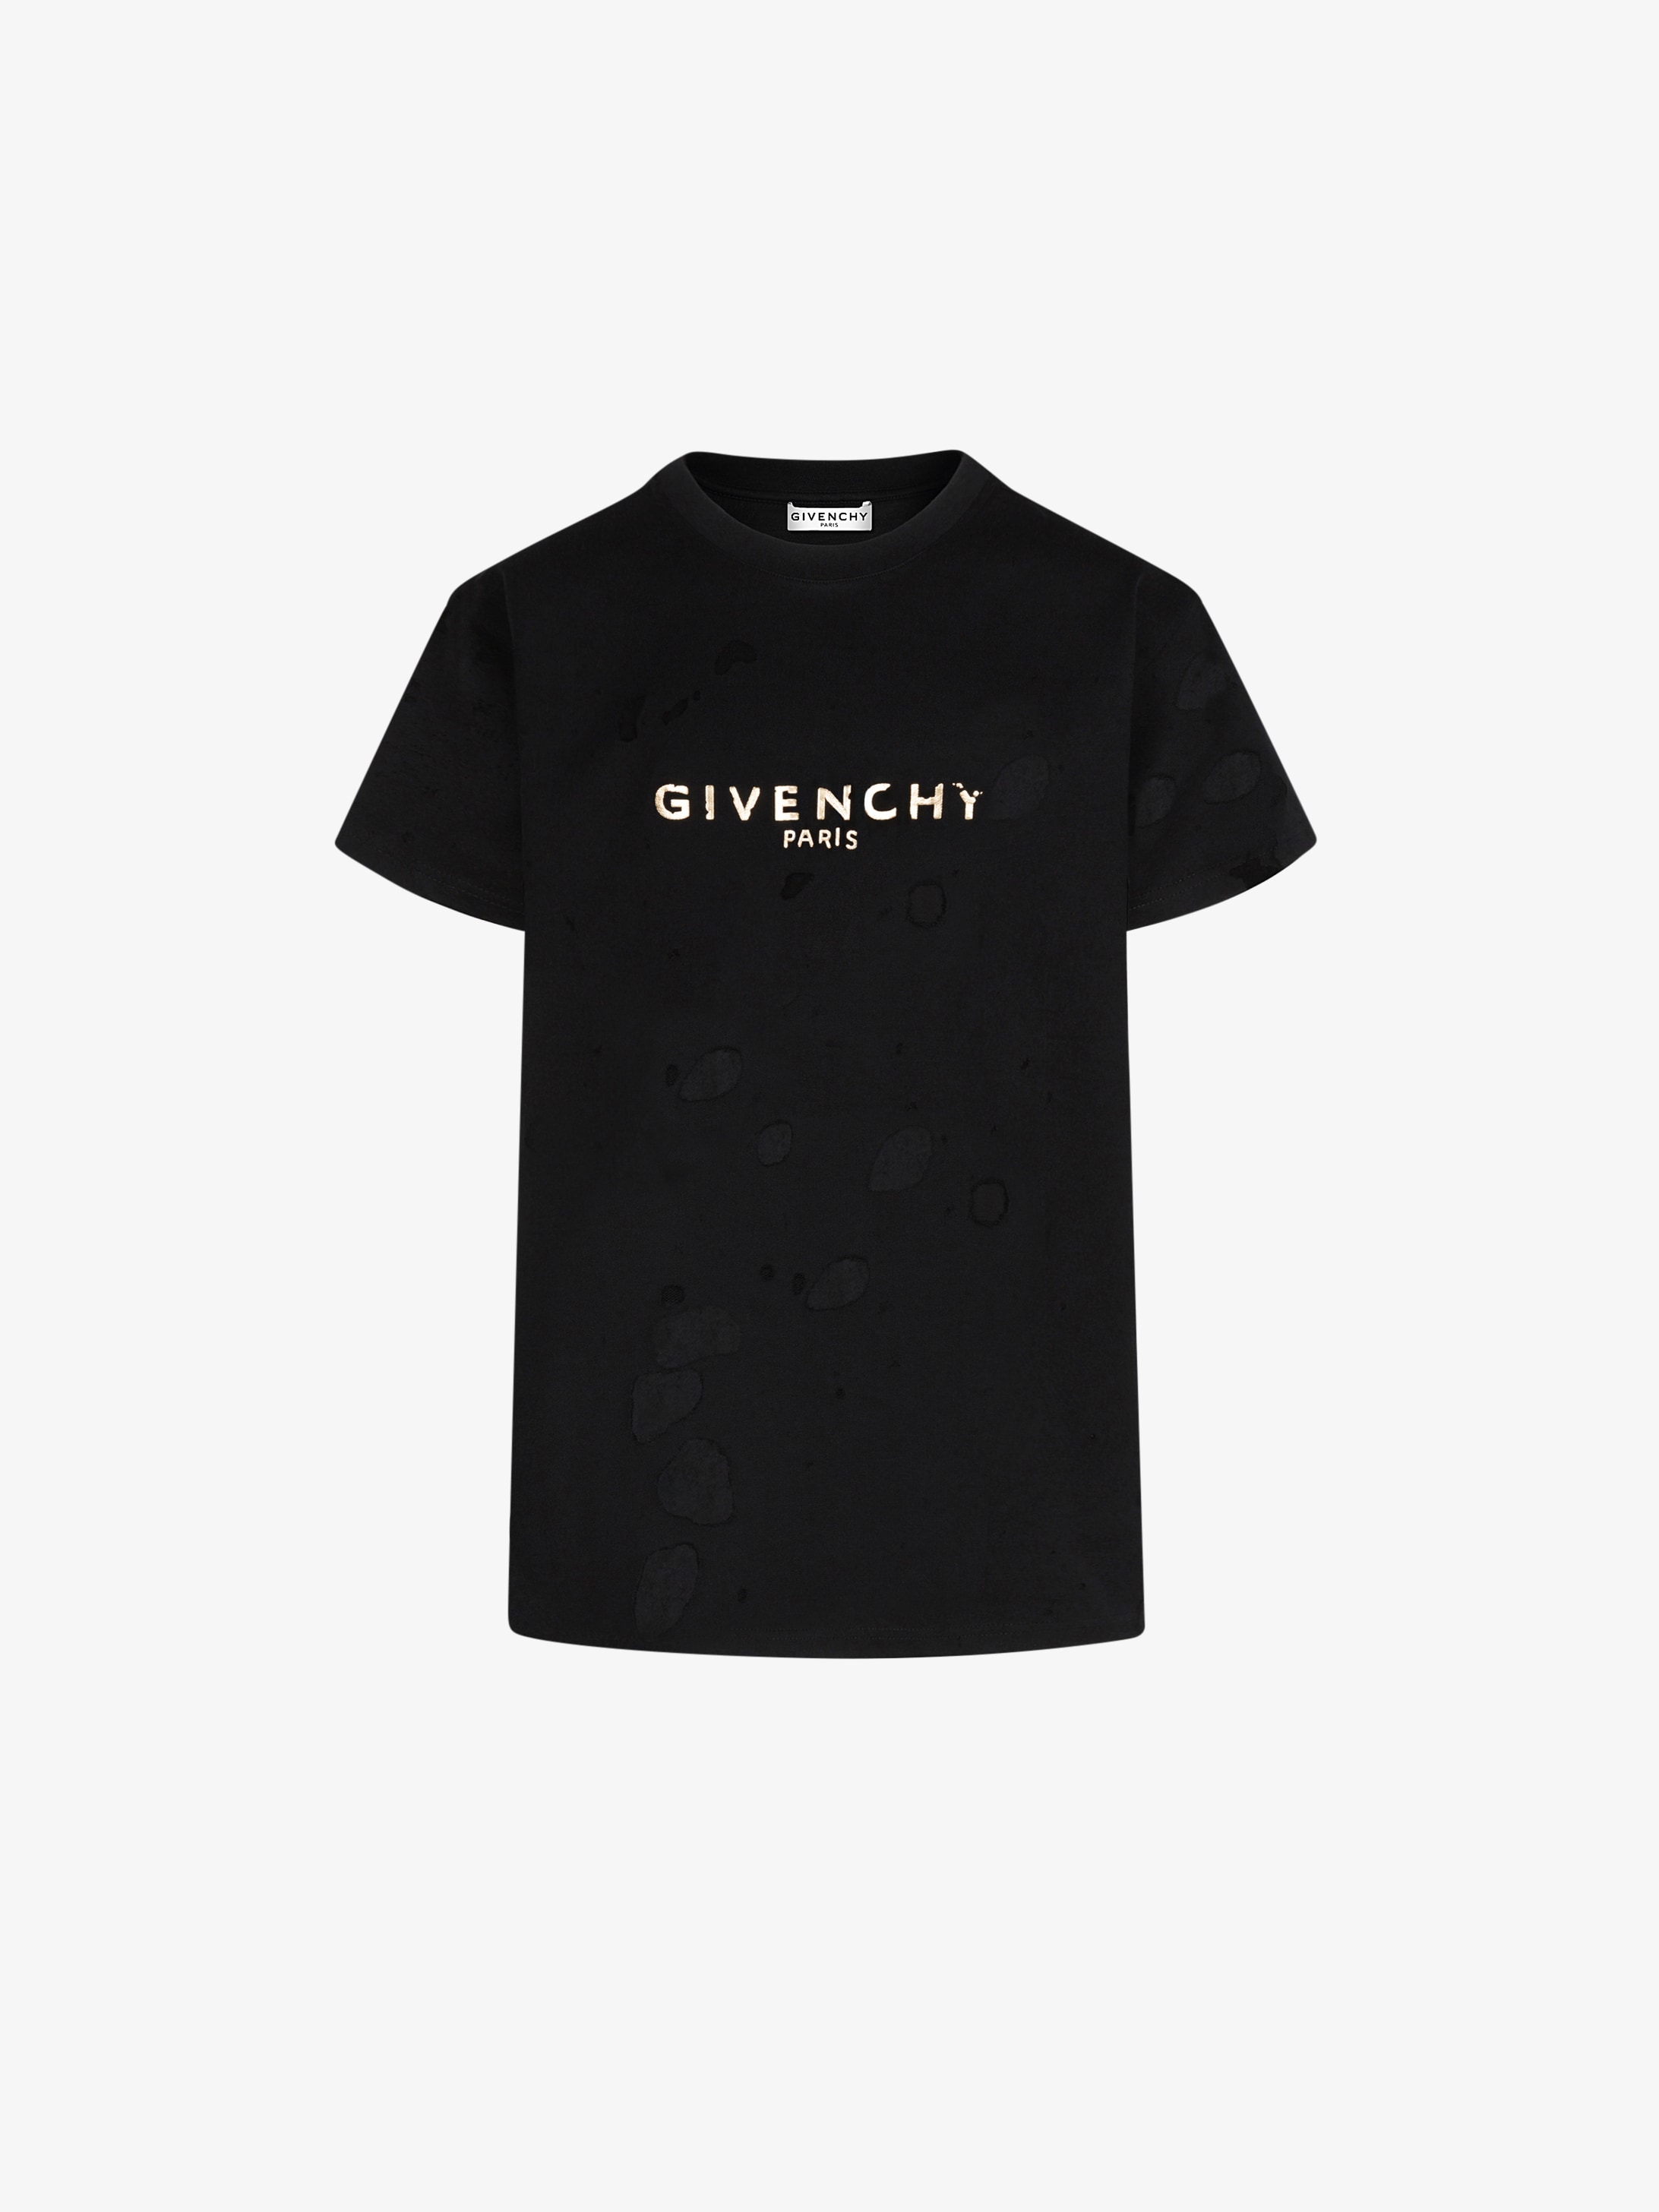 Vintage GIVENCHY PARIS masculine fit T-shirt | GIVENCHY Paris